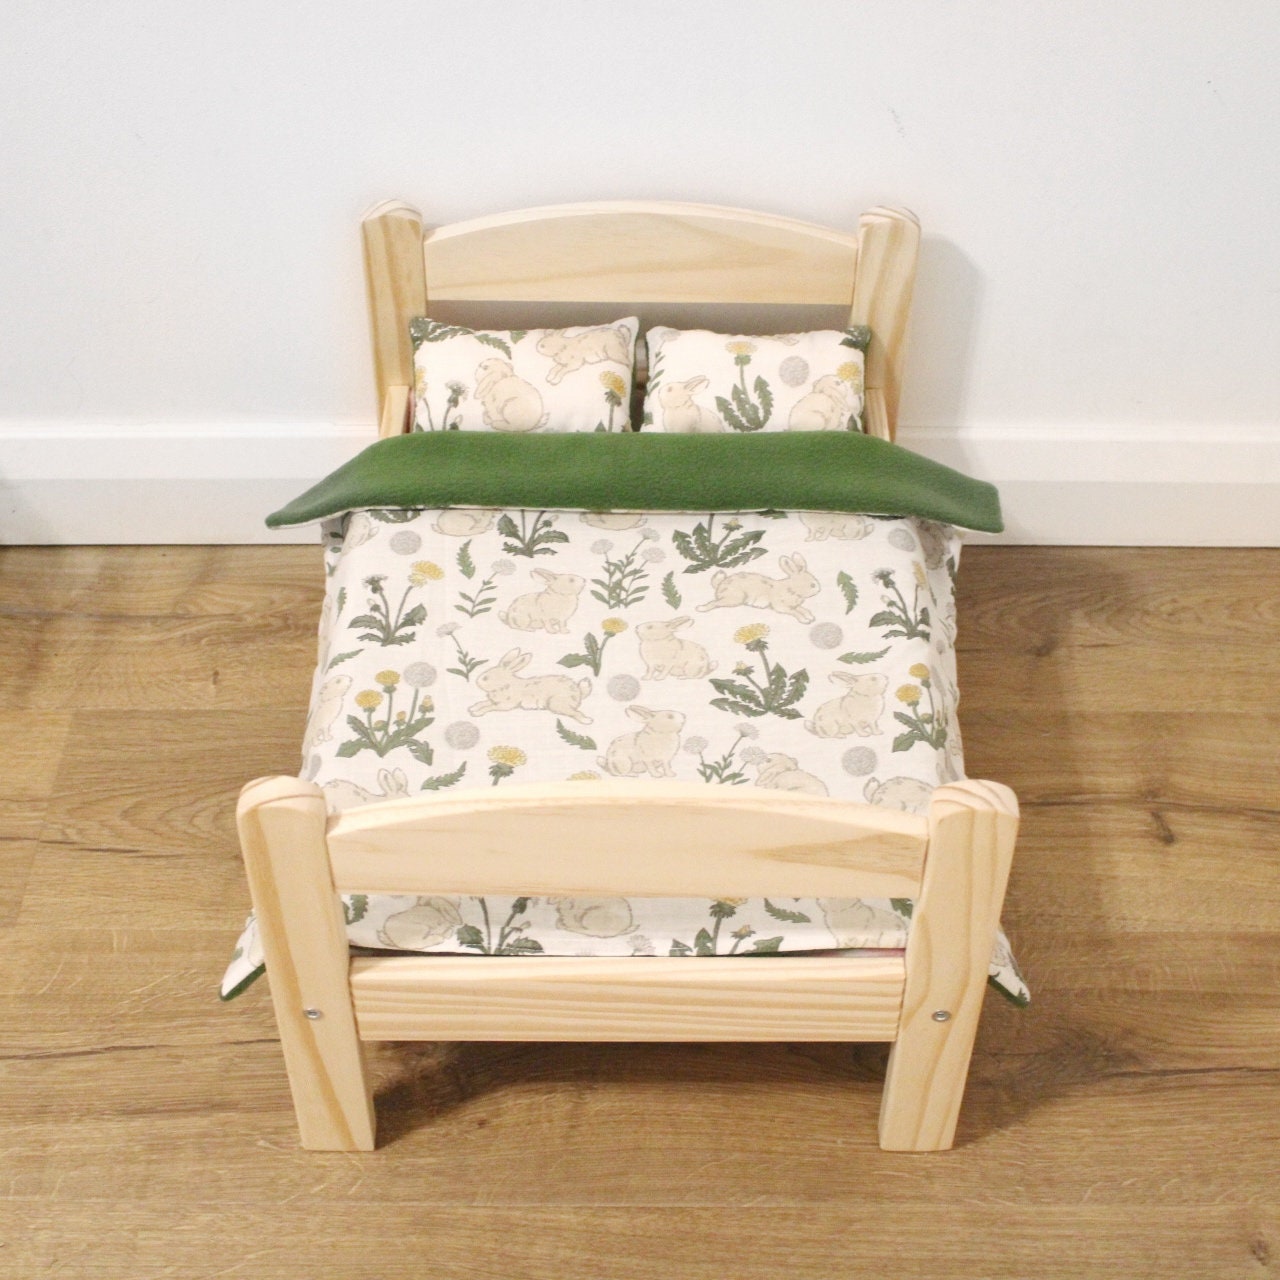 Designafriend Wooden Dolls Bed bed frame duvet pillow Gift NEW mattress 